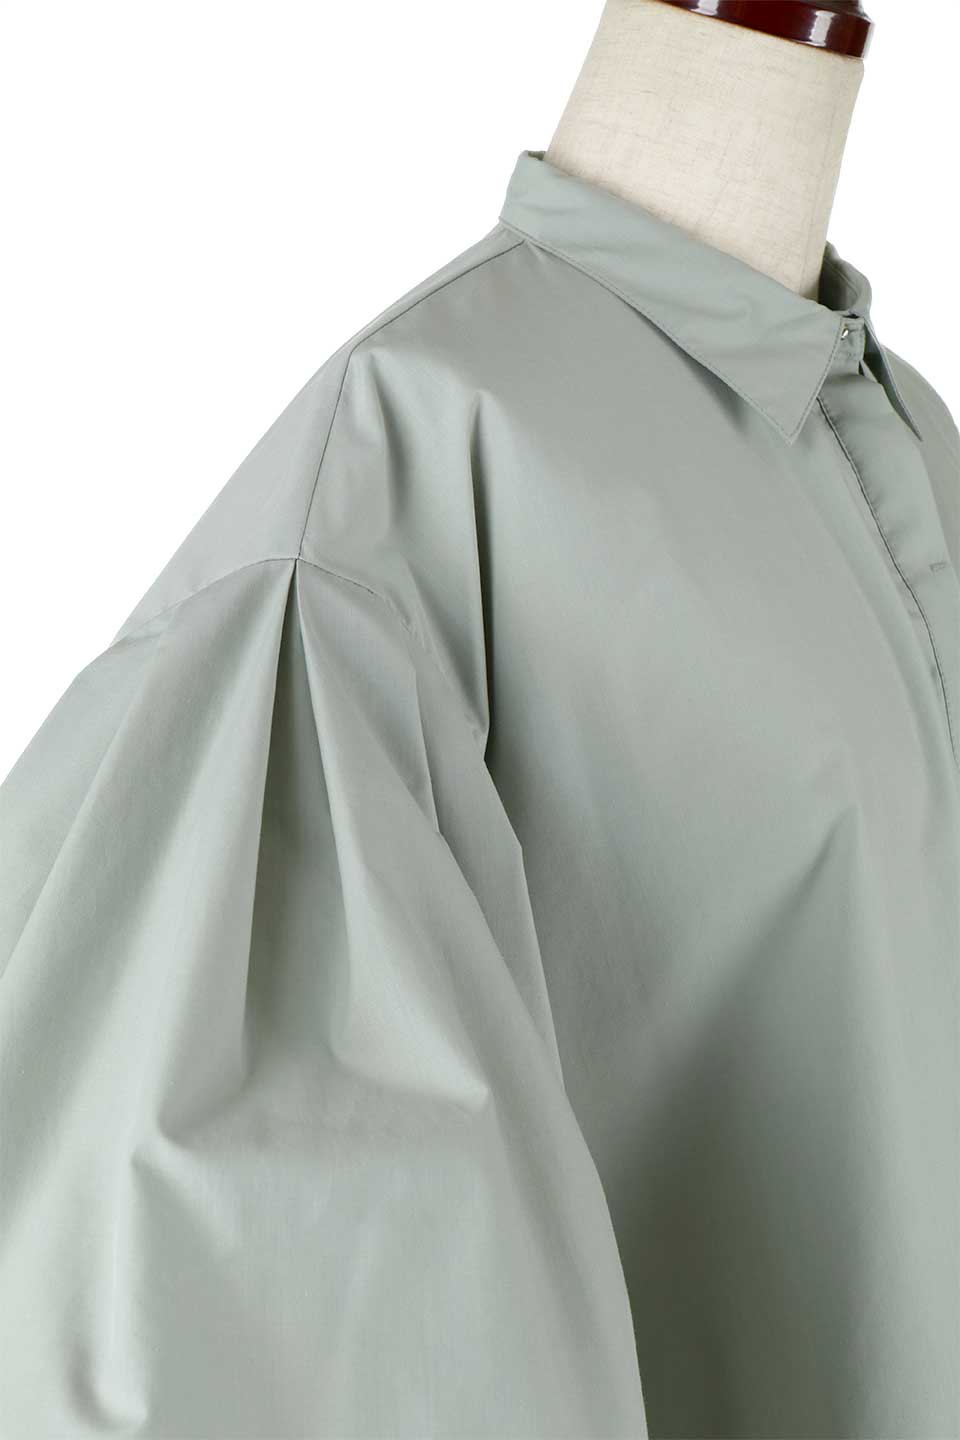 FlareHalfSleeveShirtsフレアスリーブ・五分袖シャツ大人カジュアルに最適な海外ファッションのothers（その他インポートアイテム）のトップスやシャツ・ブラウス。春夏に着たい半袖シャツをフレアスリーブにしたアイテム。サラッとしてなめらかな質感のシャツ生地を使用。/main-19